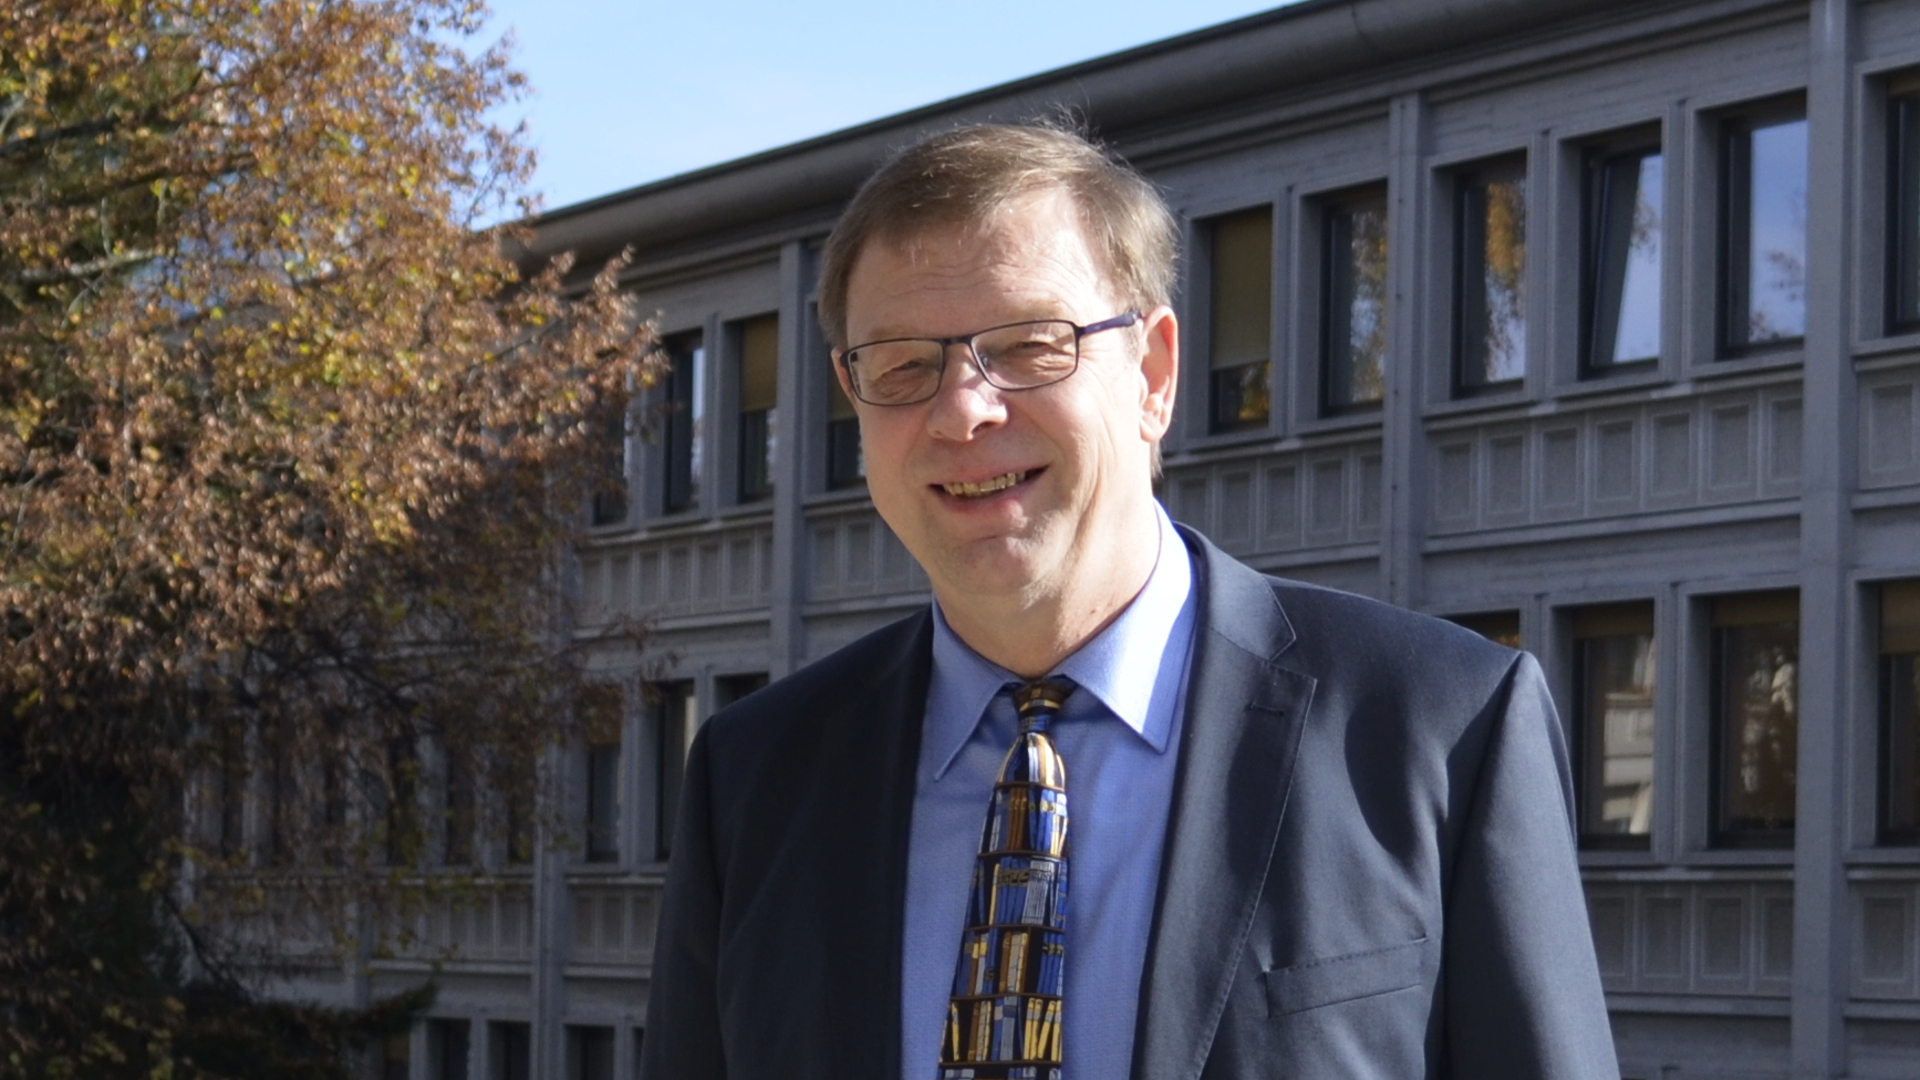 Martin Klöckener est directeur de l’Institut de sciences liturgiques à la Faculté de théologie de l’Université de Fribourg | © Regula Pfeifer